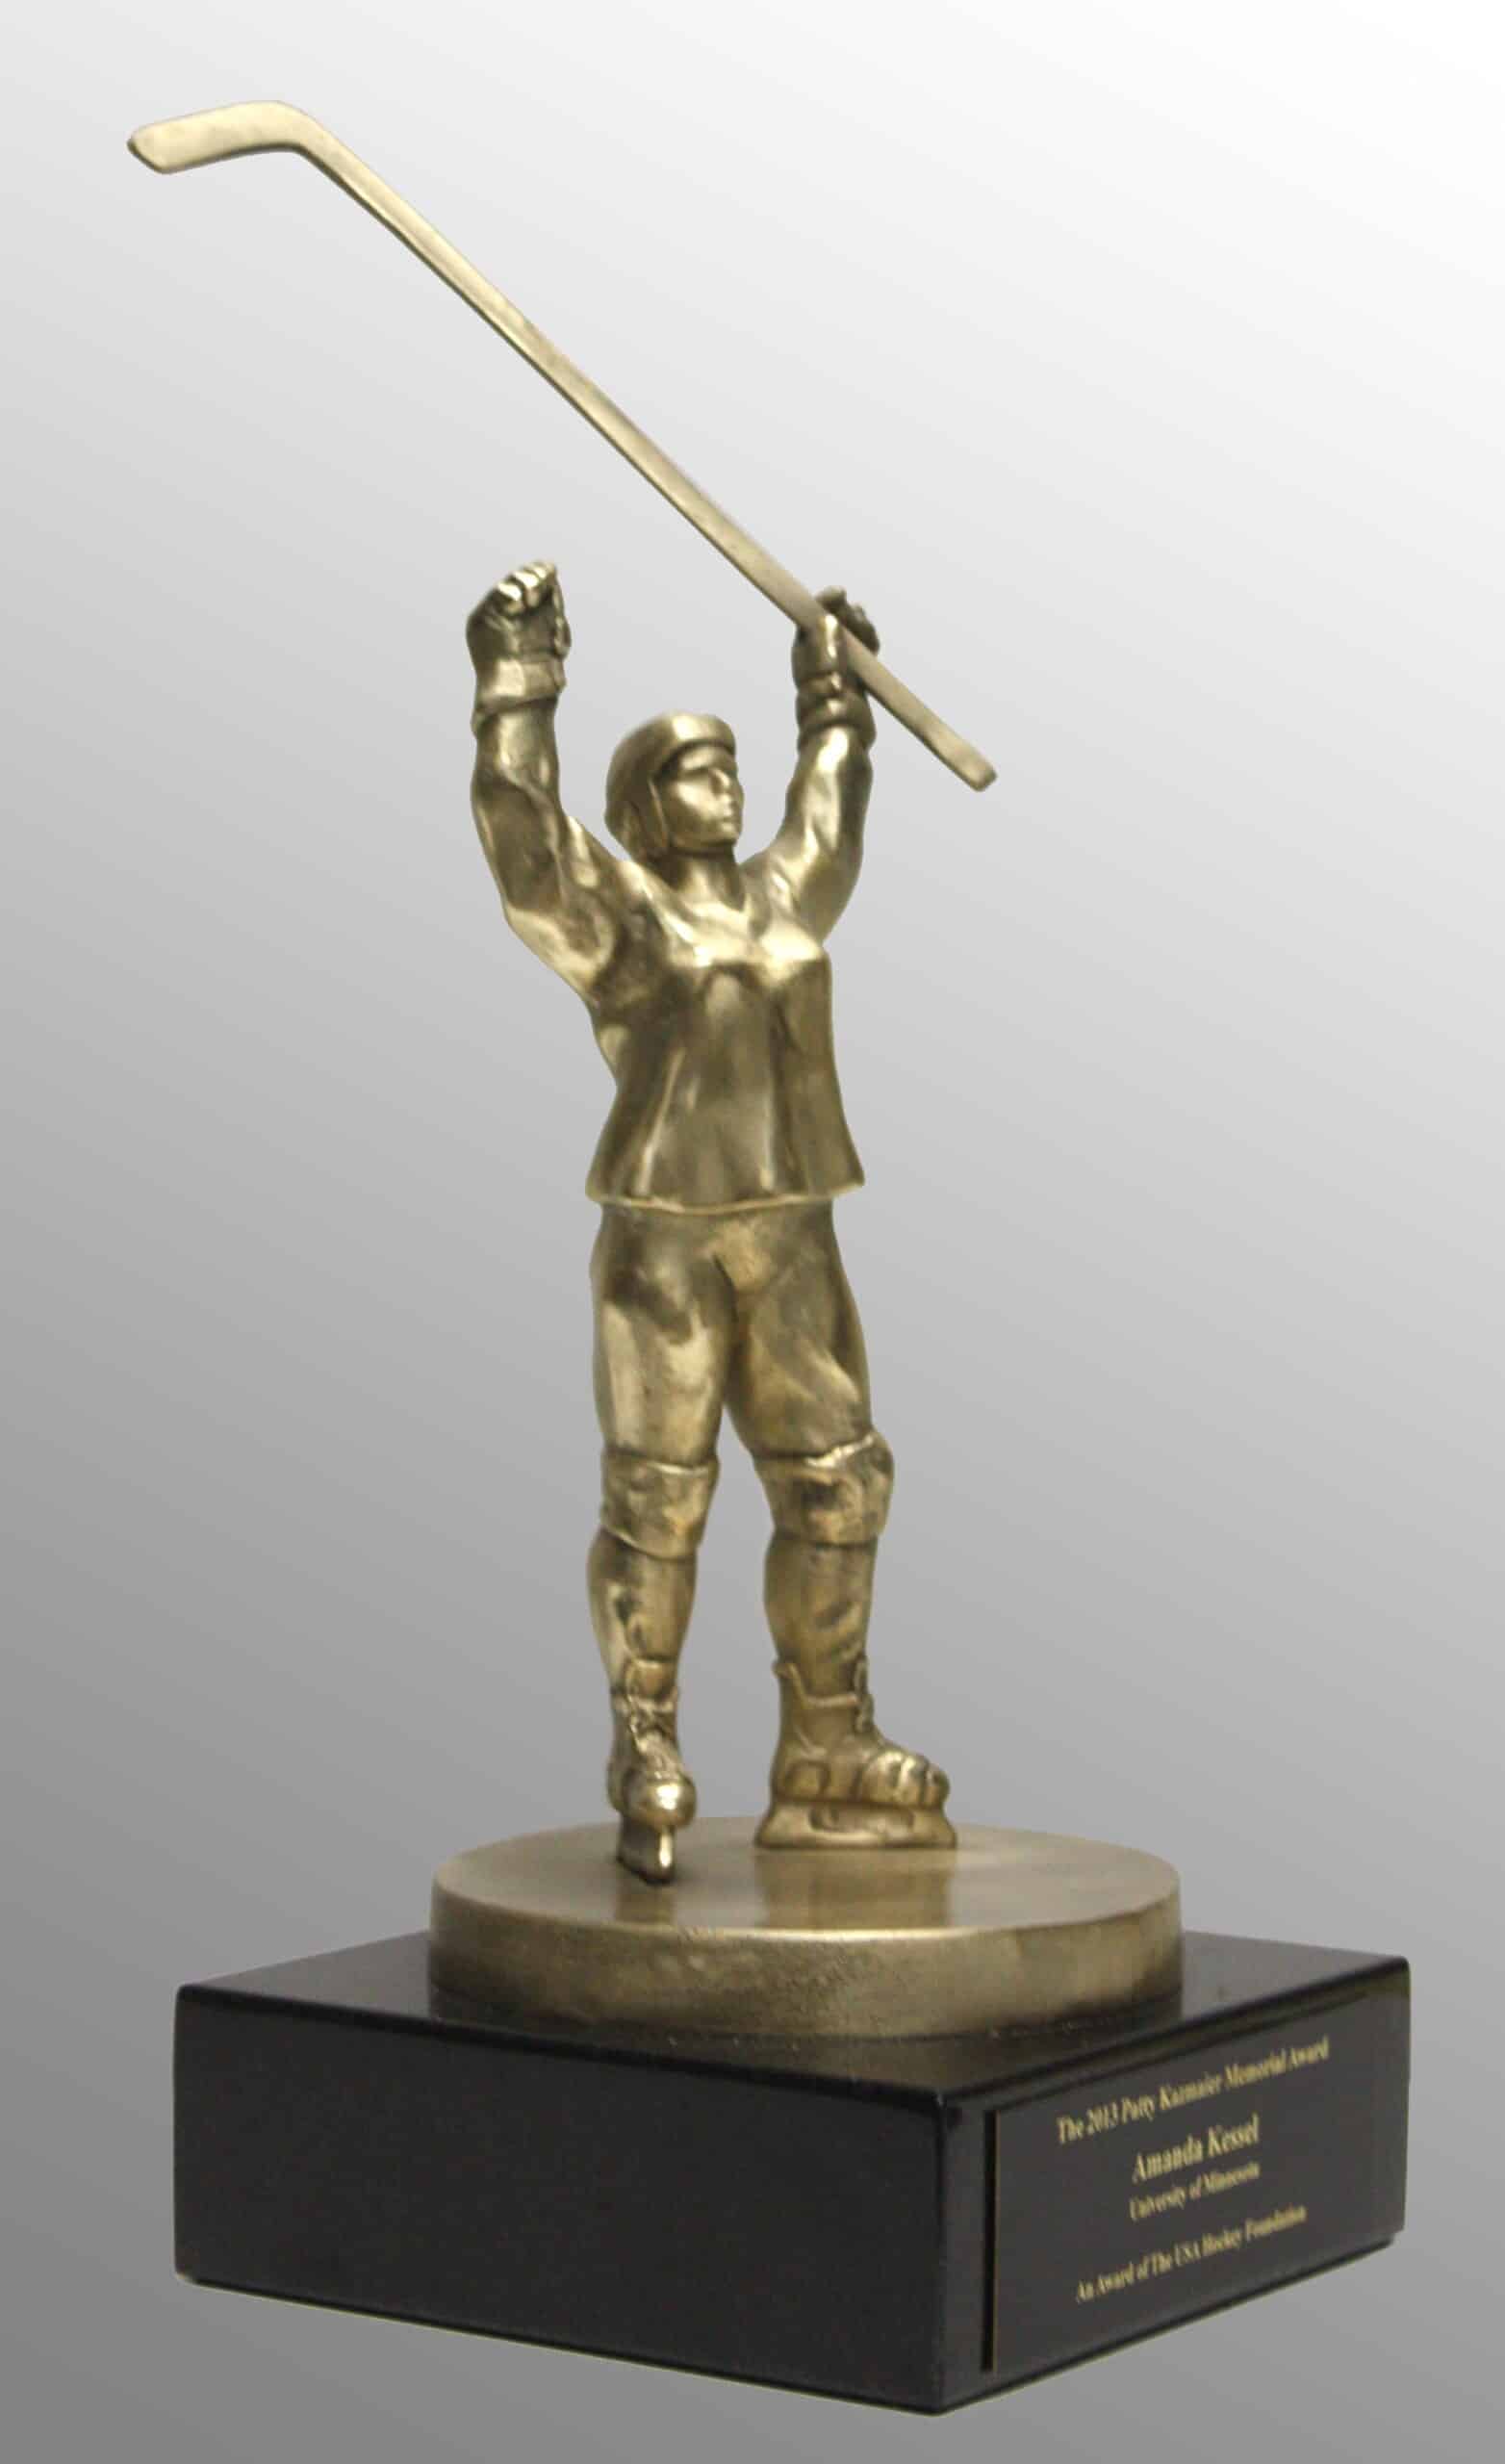 The USA Hockey Foundation Patty Kazmaier Memorial Award